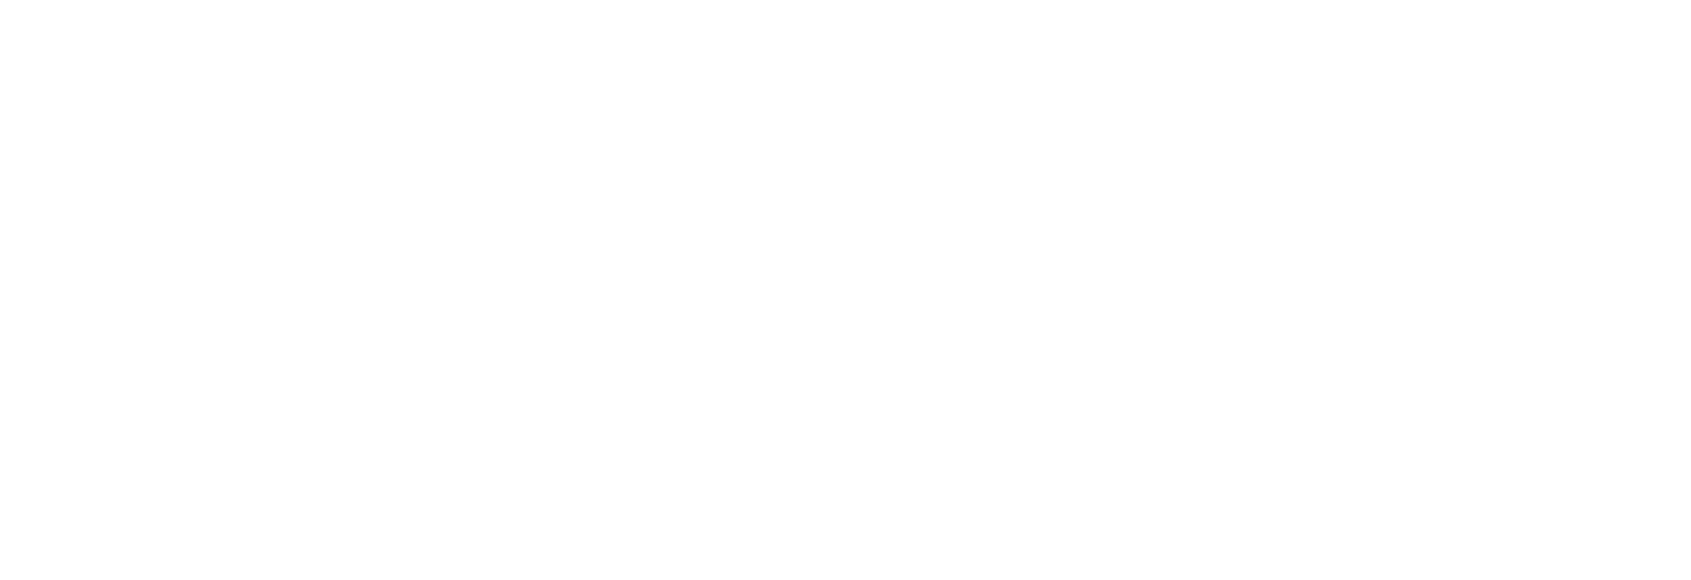 Solano Mortgage Logo White